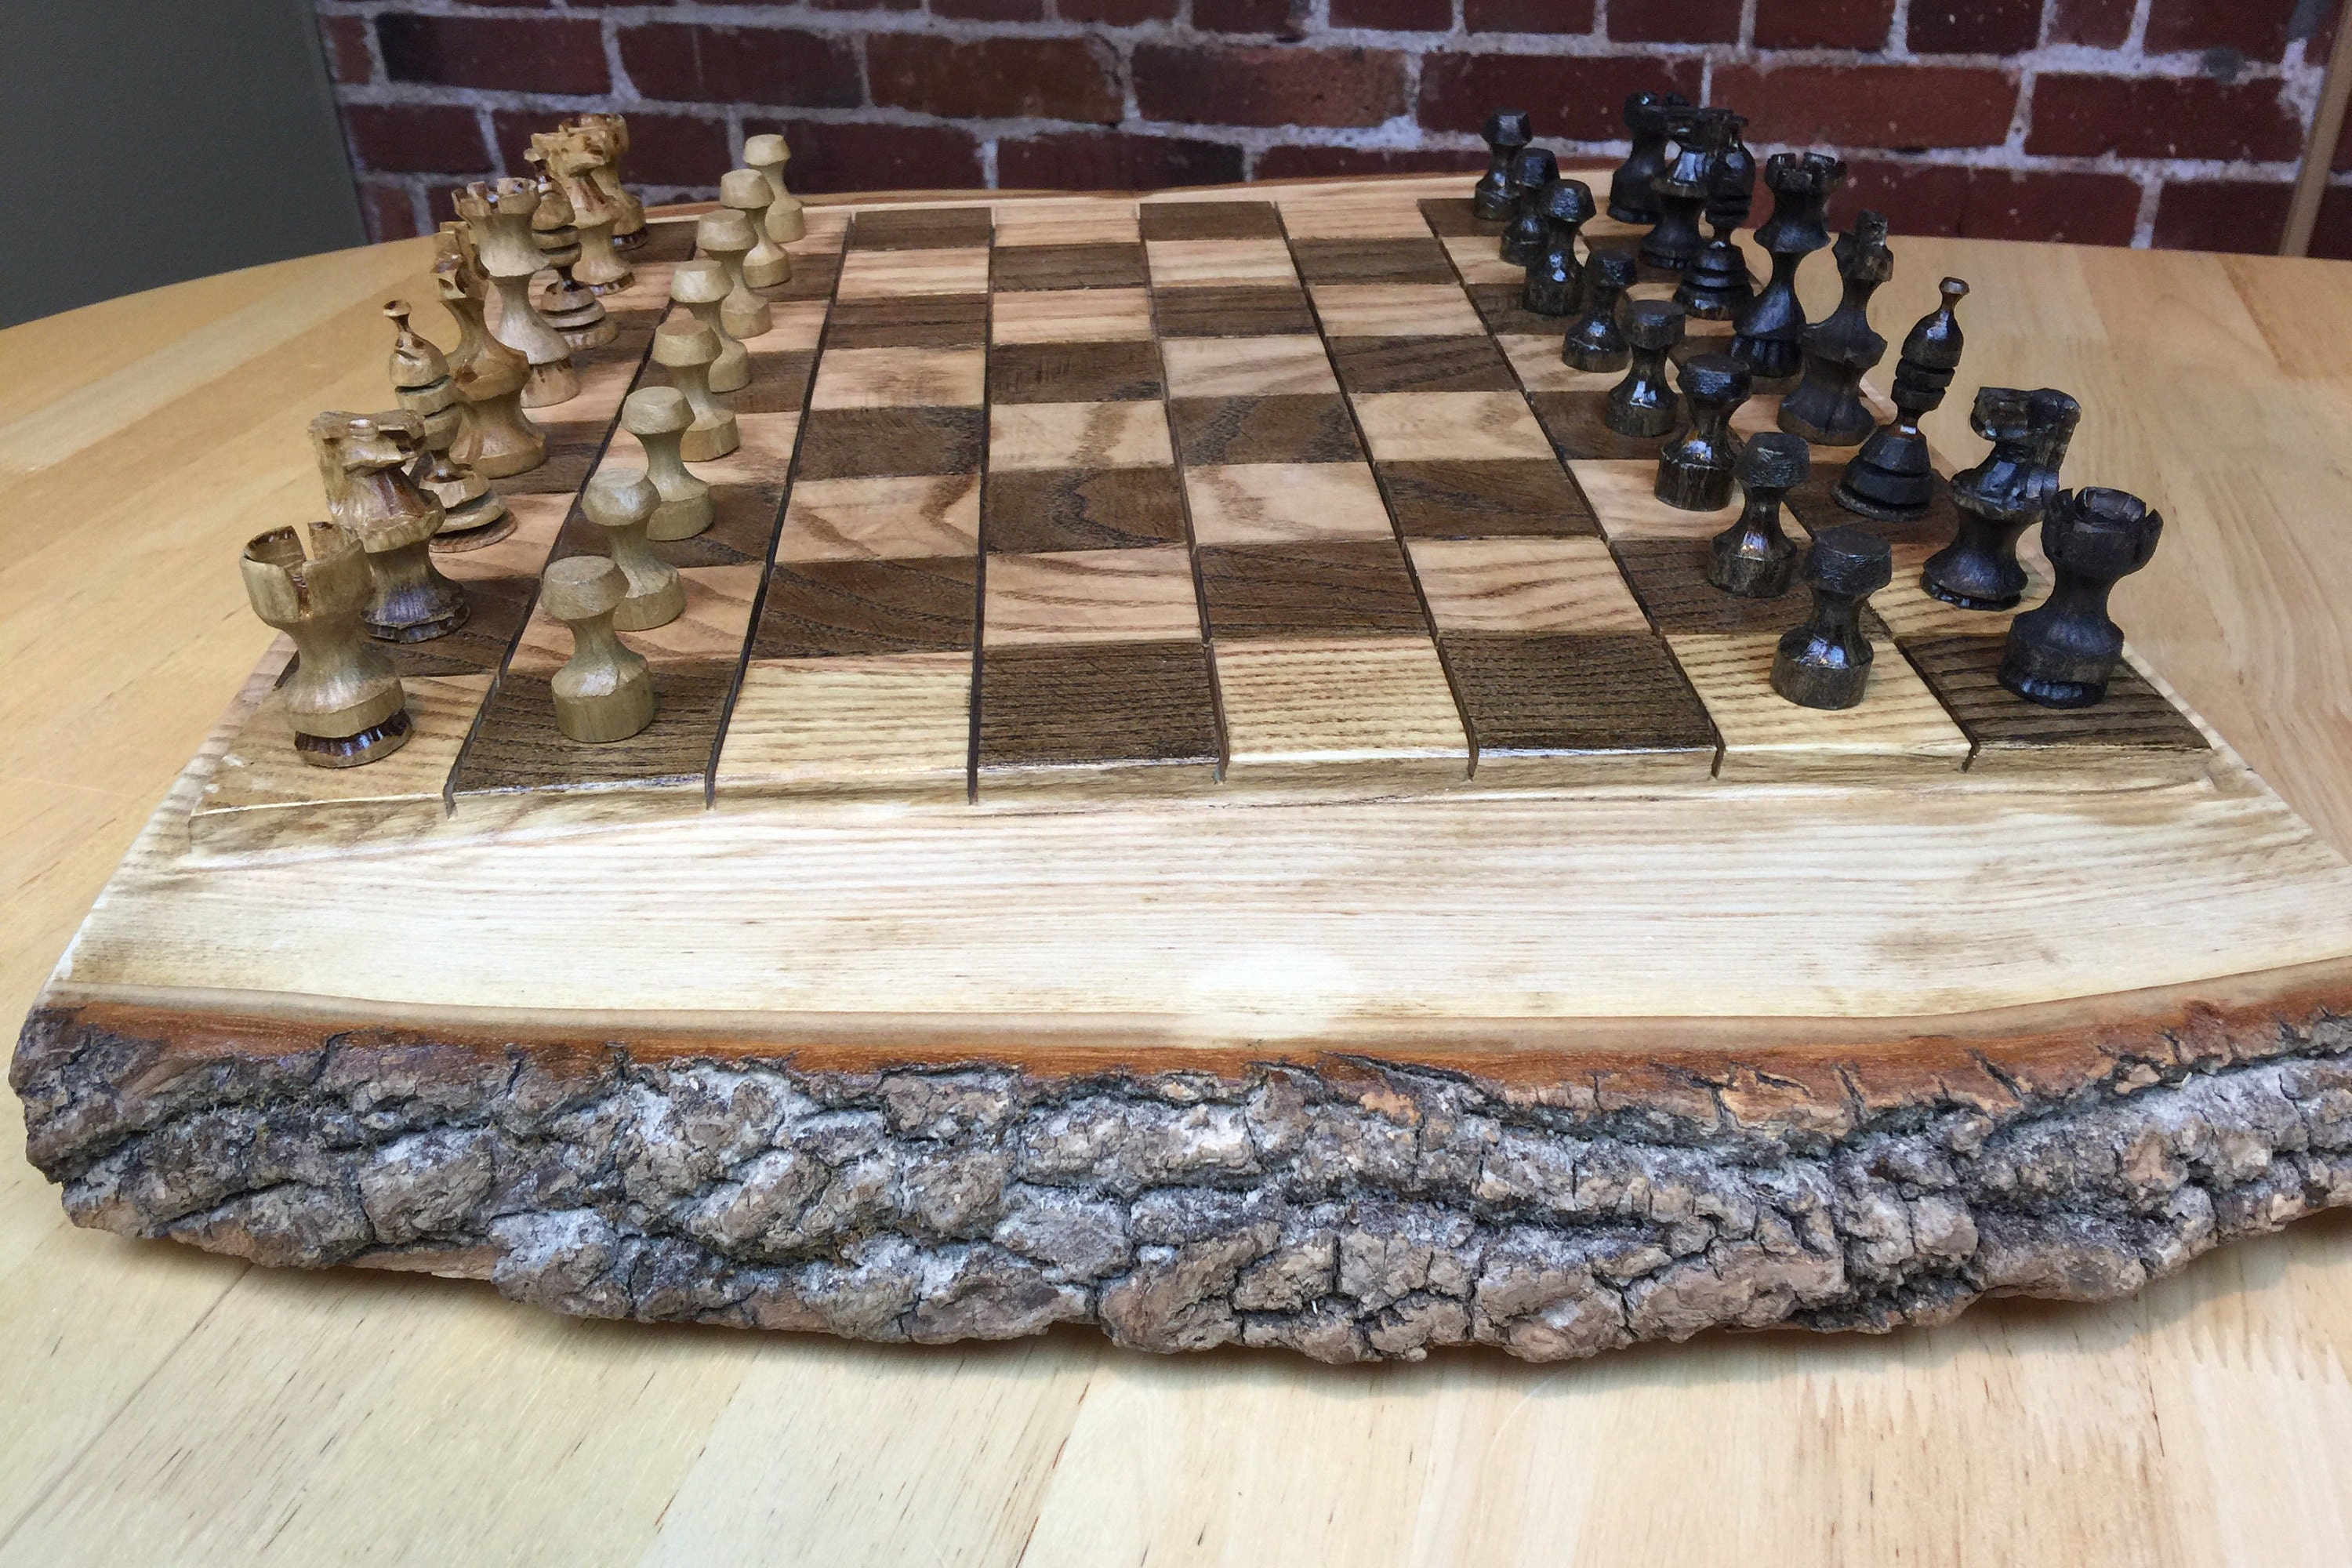 online schach spielen gratis